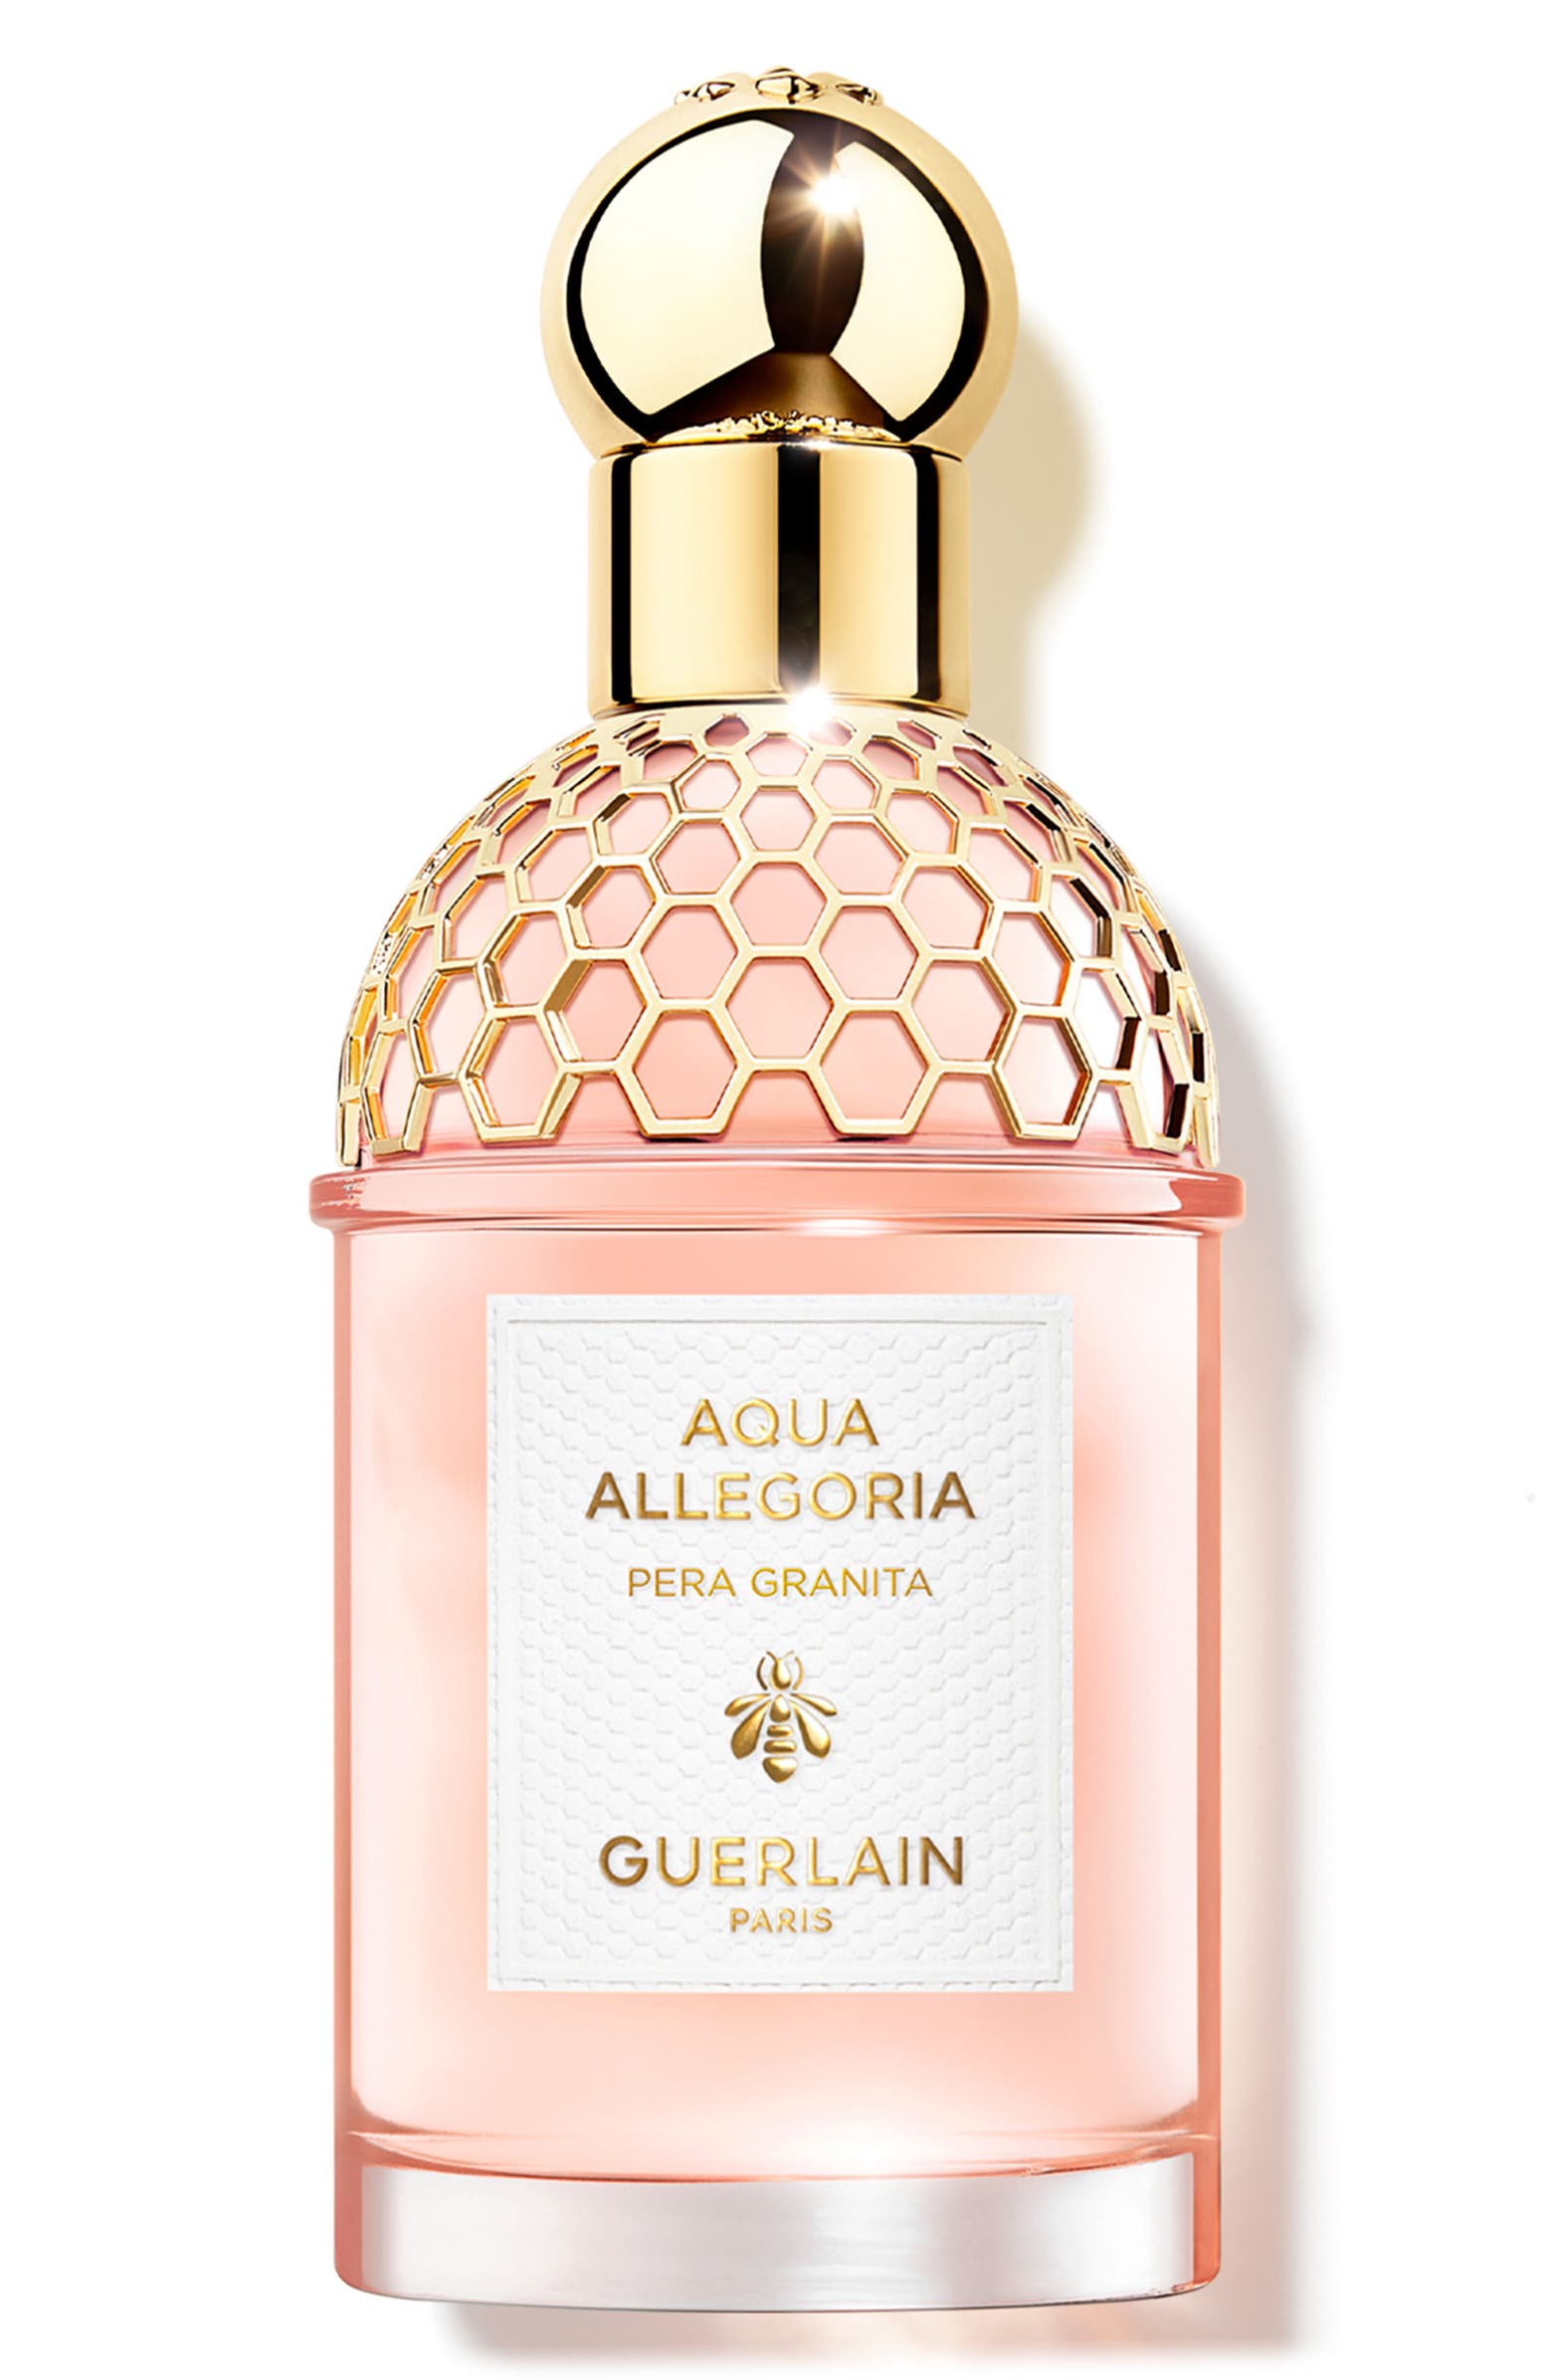 Guerlain Aqua Allergoria Pera Granita perfume